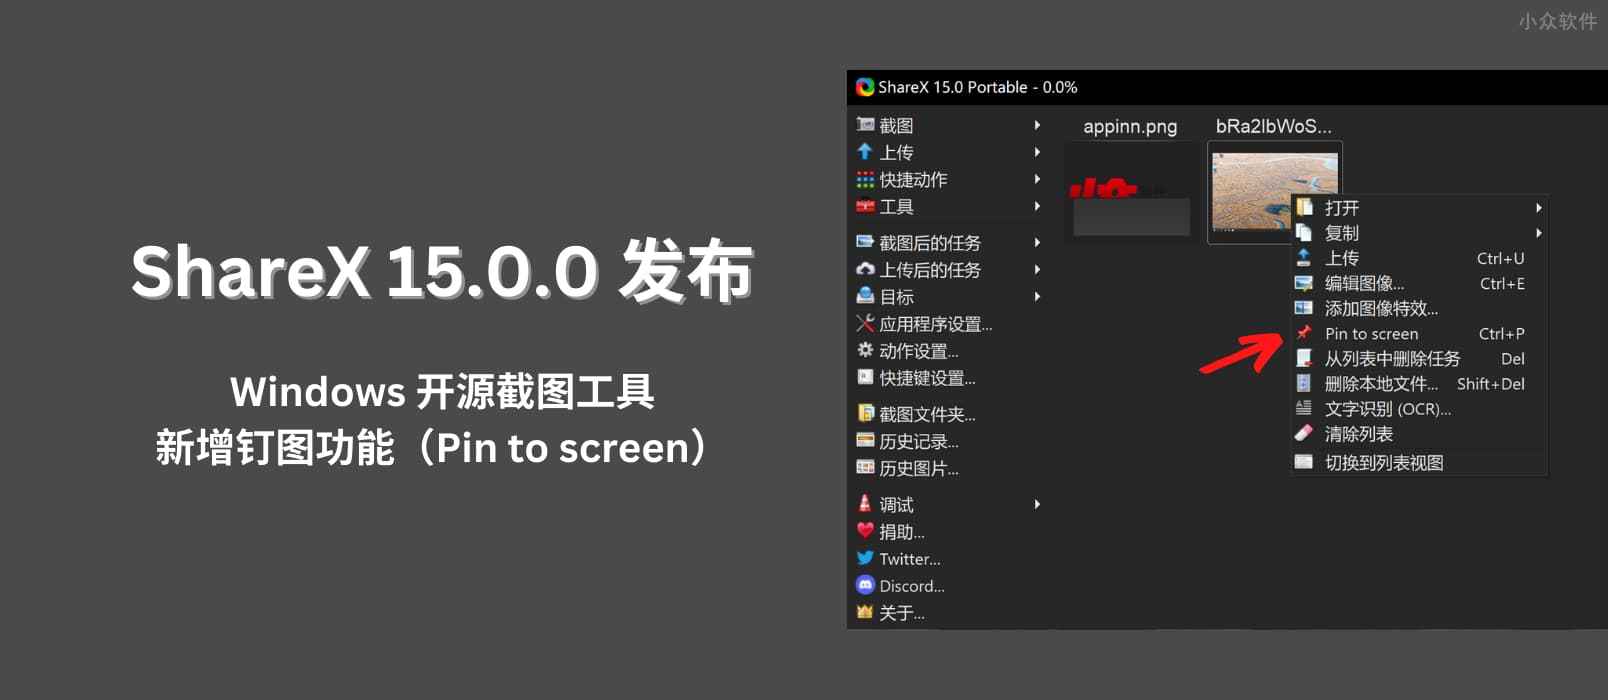 ShareX 15.0.0 发布：Windows 开源截图工具，新增钉图功能（Pin to screen）